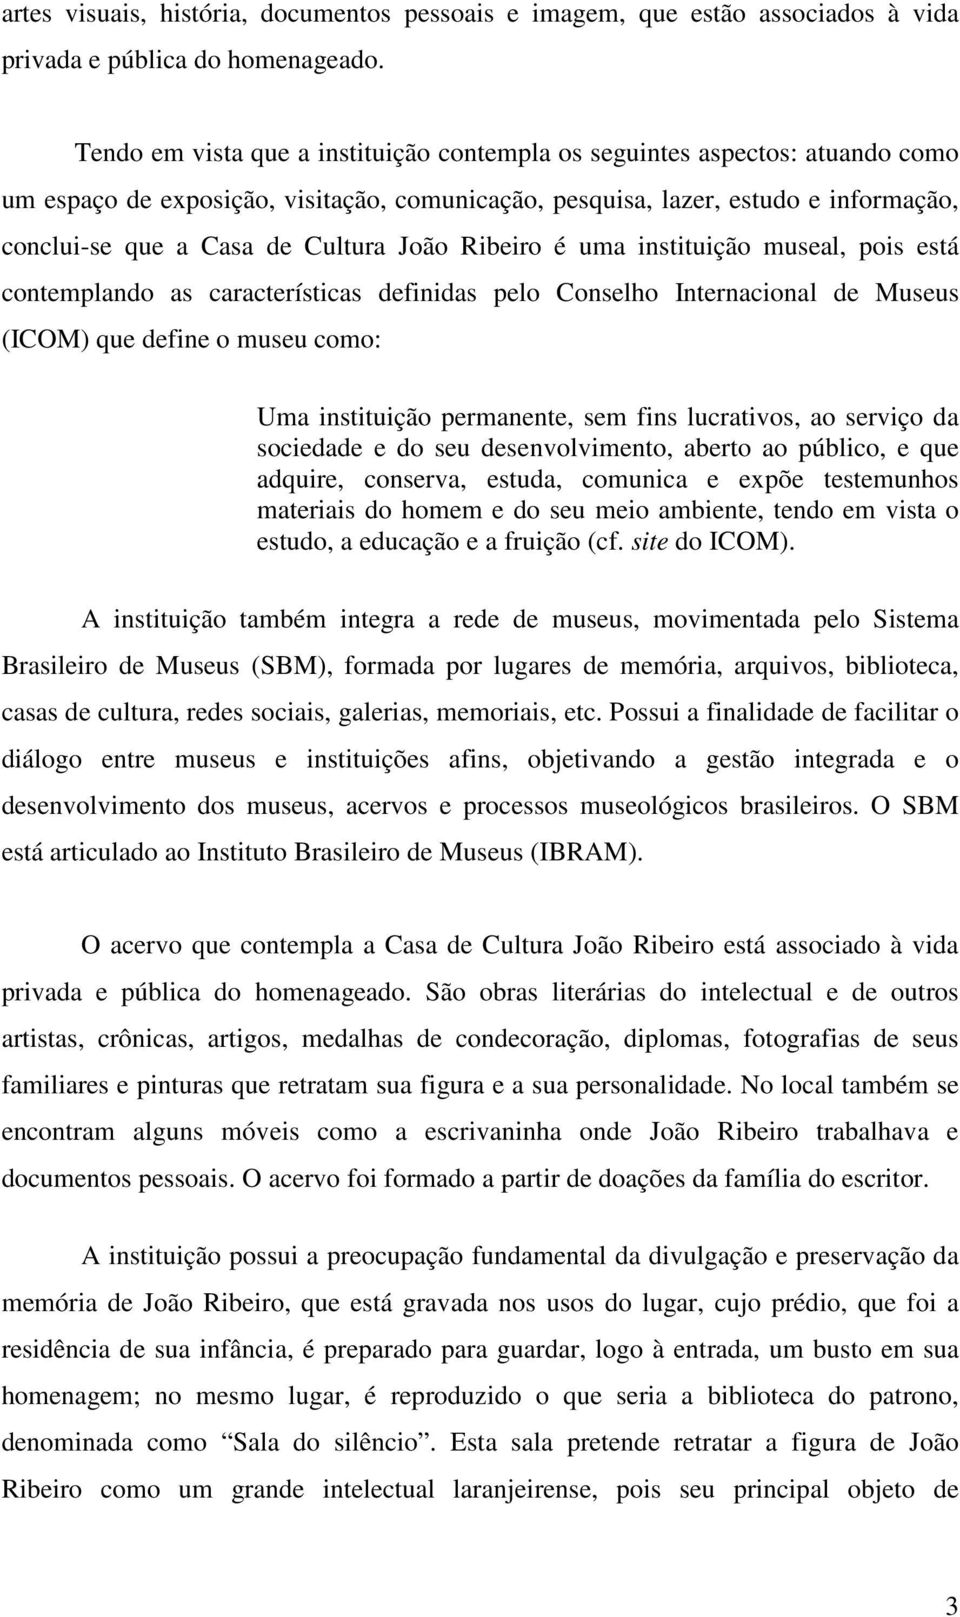 João Ribeiro é uma instituição museal, pois está contemplando as características definidas pelo Conselho Internacional de Museus (ICOM) que define o museu como: Uma instituição permanente, sem fins